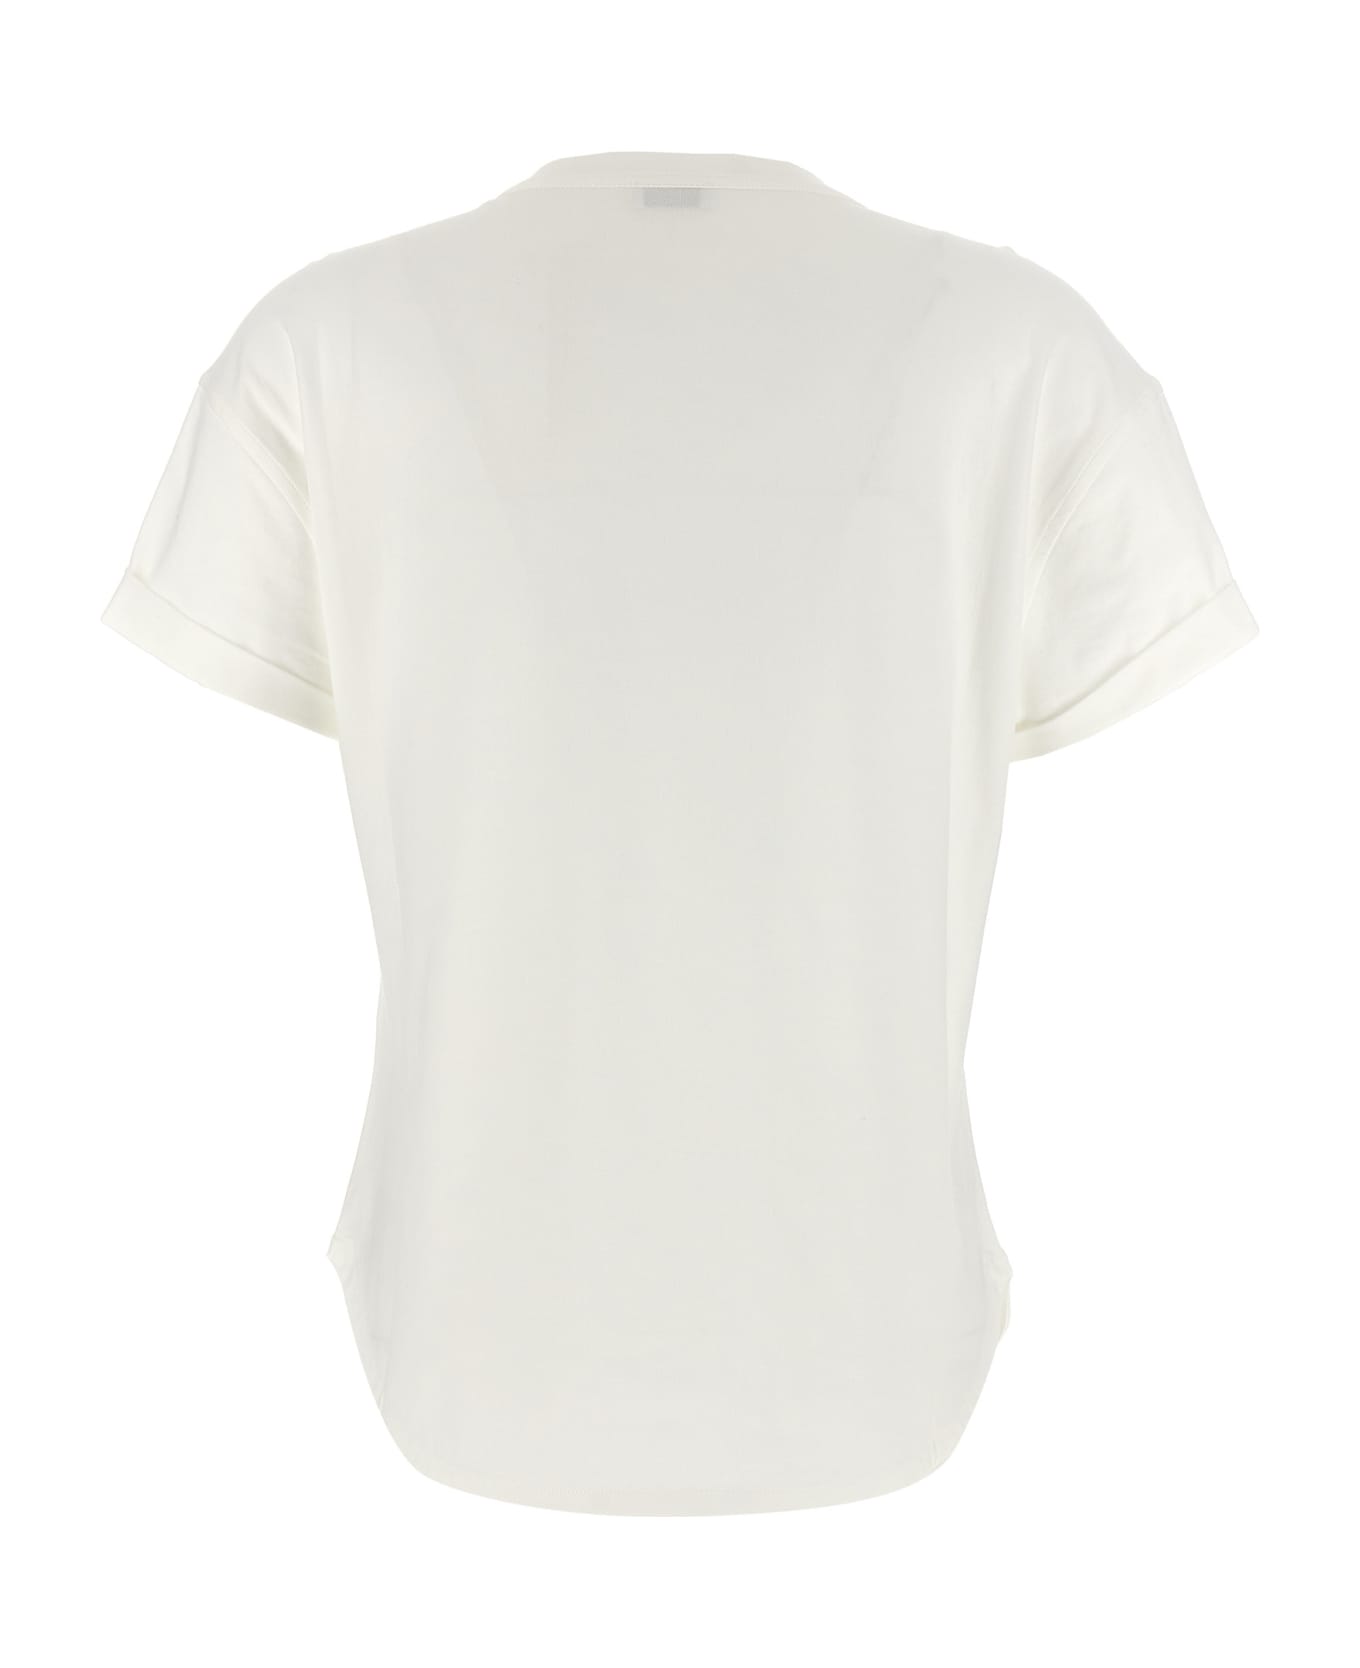 Brunello Cucinelli Pocket T-shirt - White